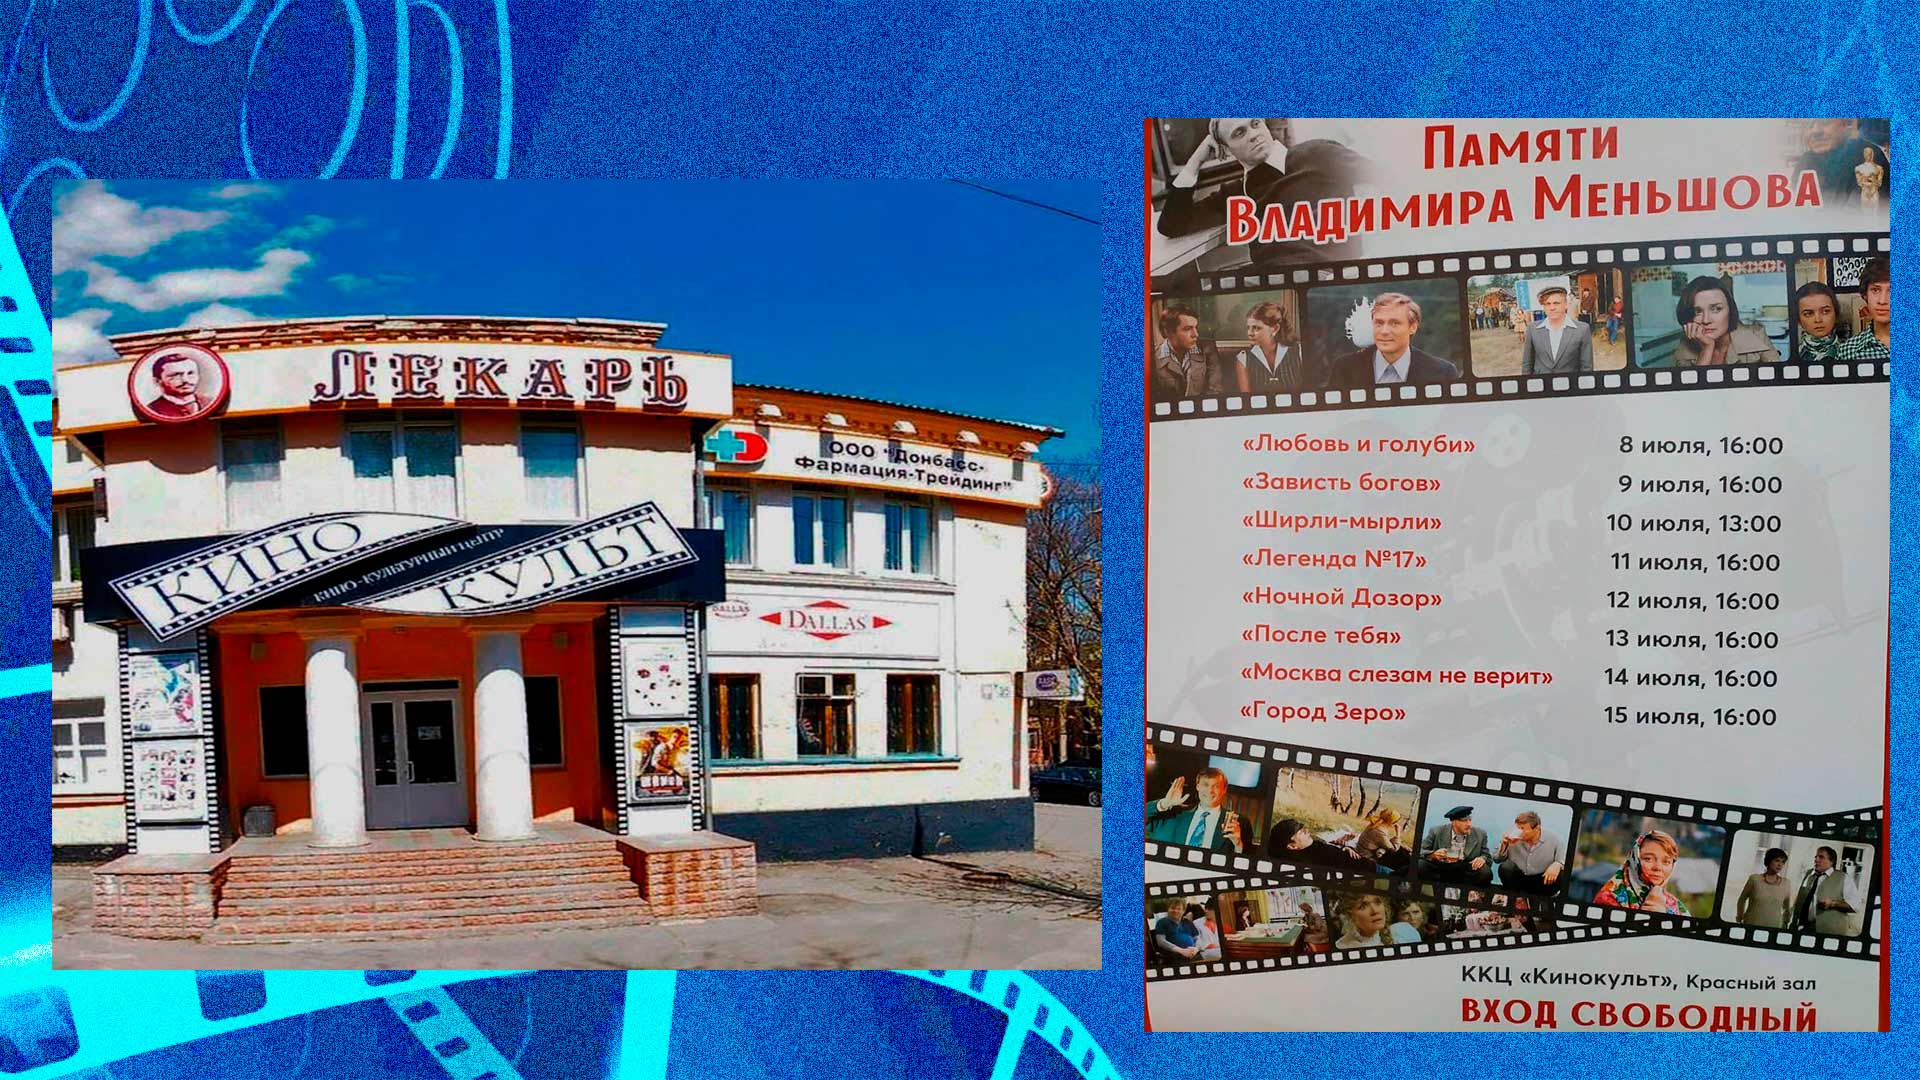 Дом кино "Кинокульт" и афиша показа фильмов памяти В. Меньшова группа ВК